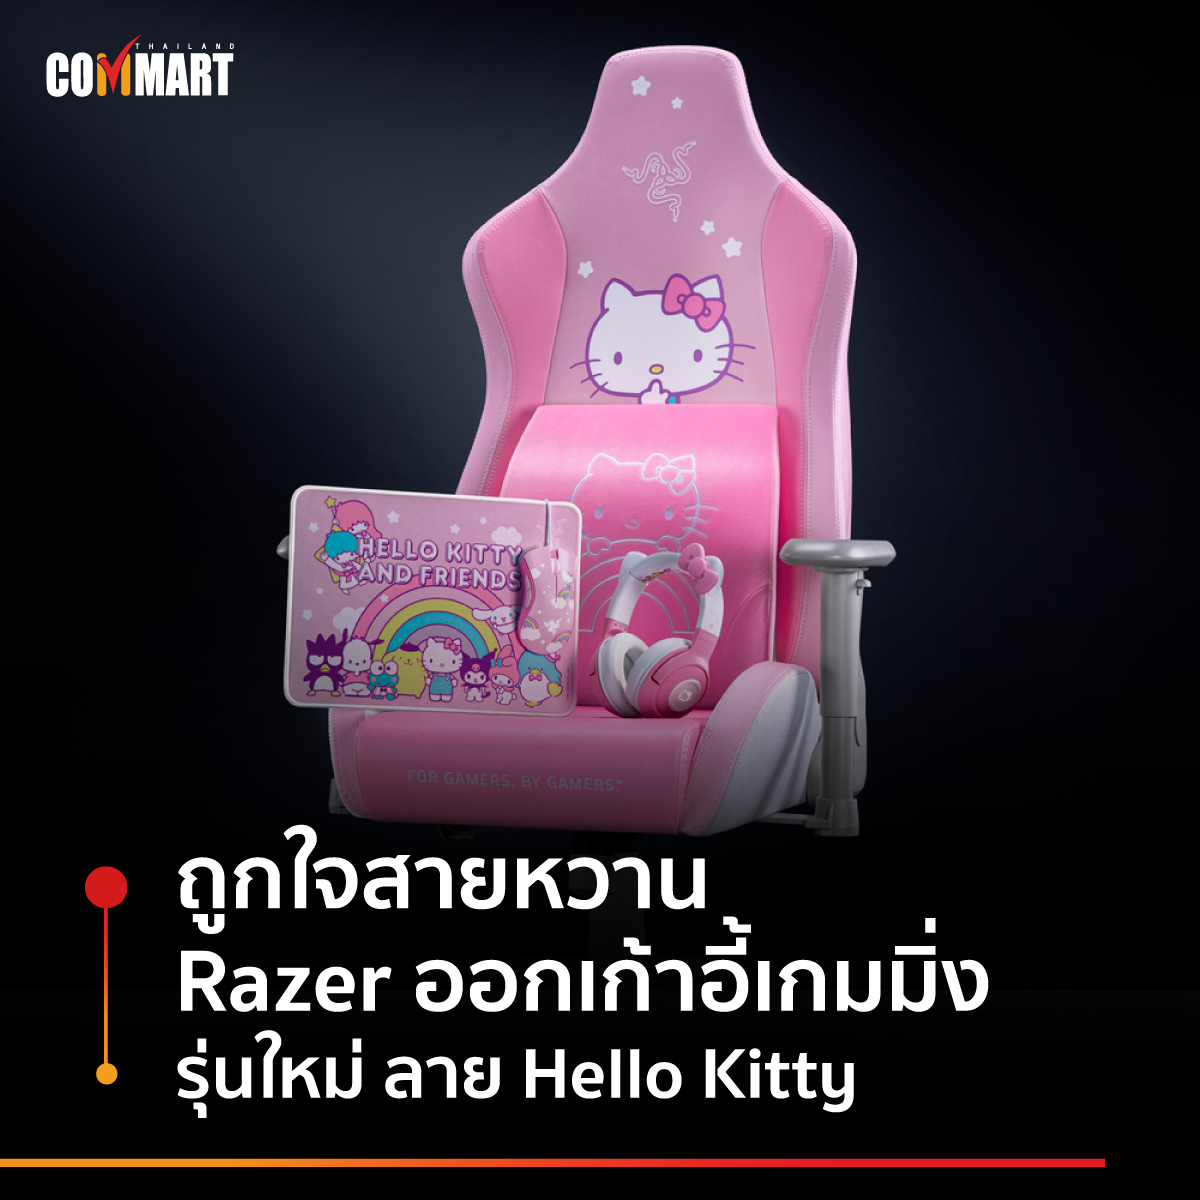 ถูกใจสายหวาน Razer ออกเก้าอี้เกมมิ่ง รุ่นใหม่ ลาย Hello Kitty